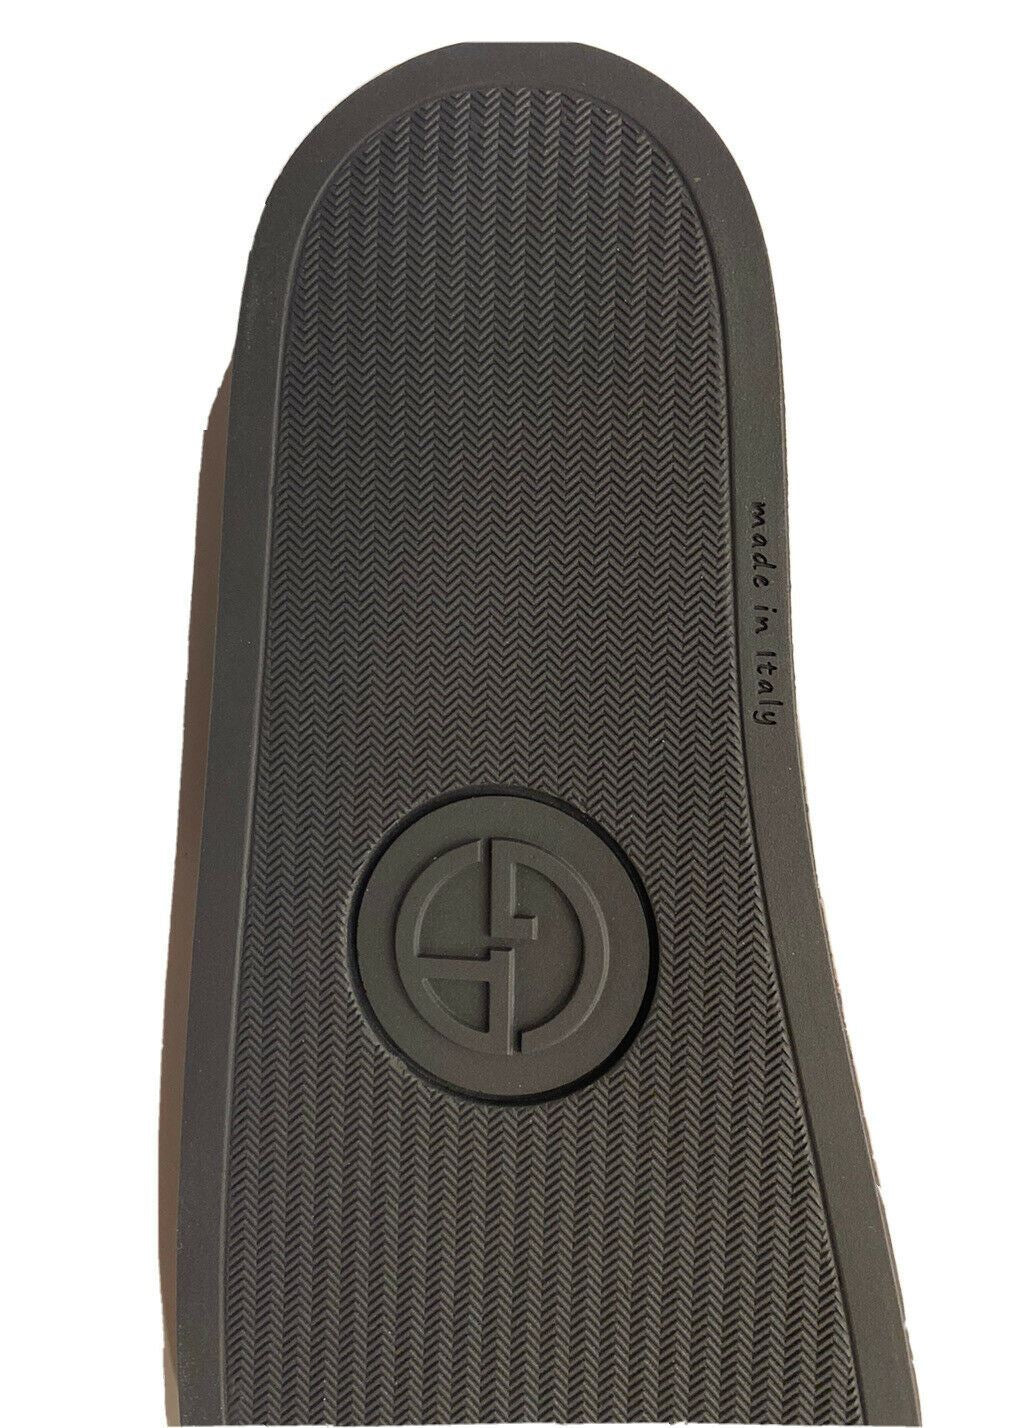 NIB $295 Giorgio Armani Men's Rubber Gray/Black Sandals 8.5 US (42 Eu) IT X2P069